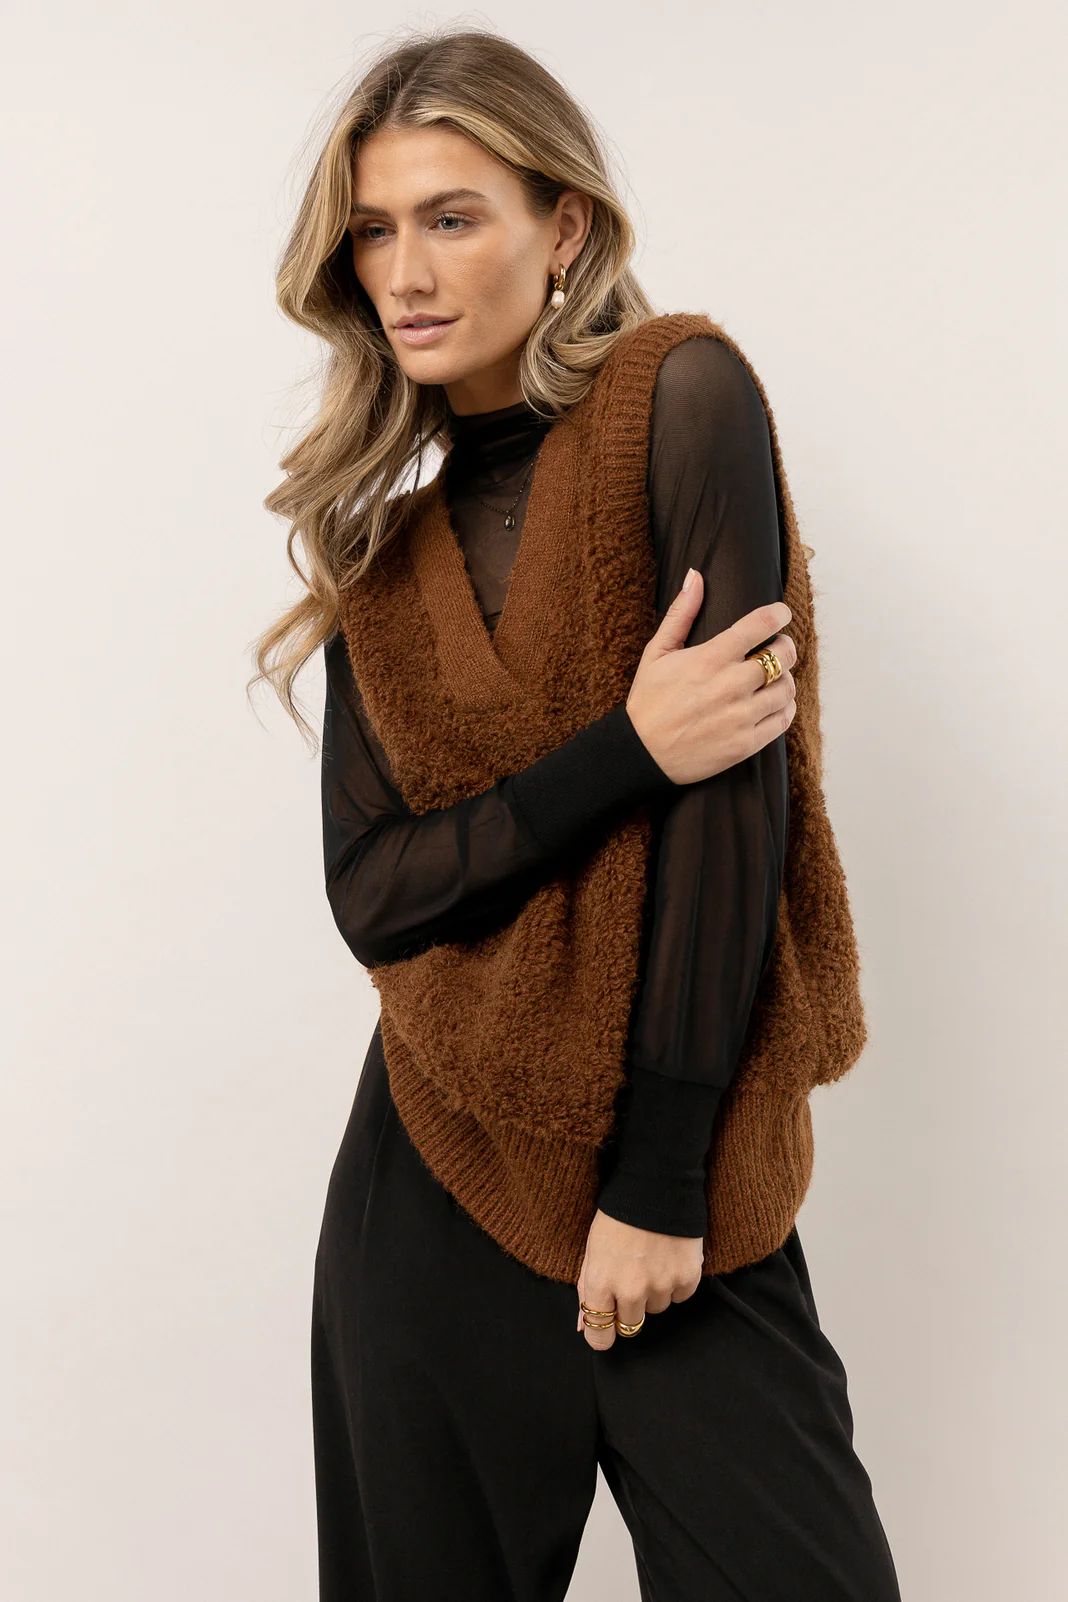 Vero Moda Lucia Sweater Vest in Brown | Bohme